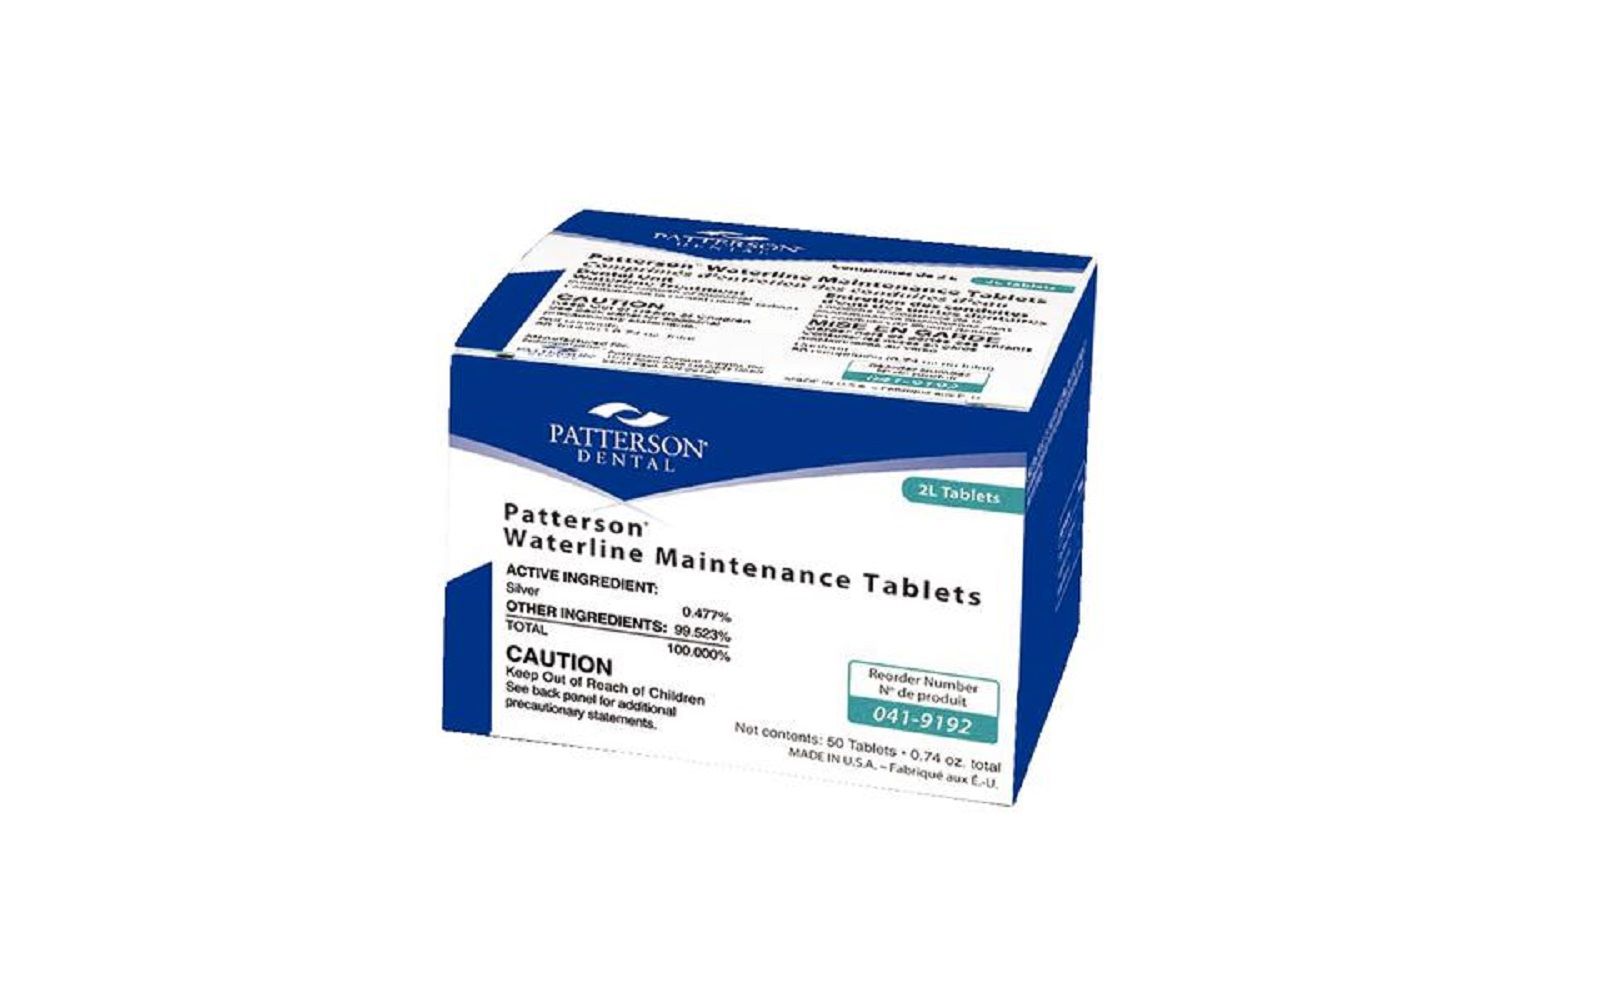 Patterson® waterline maintenance tablets, 50/pkg - 2 liter treatment